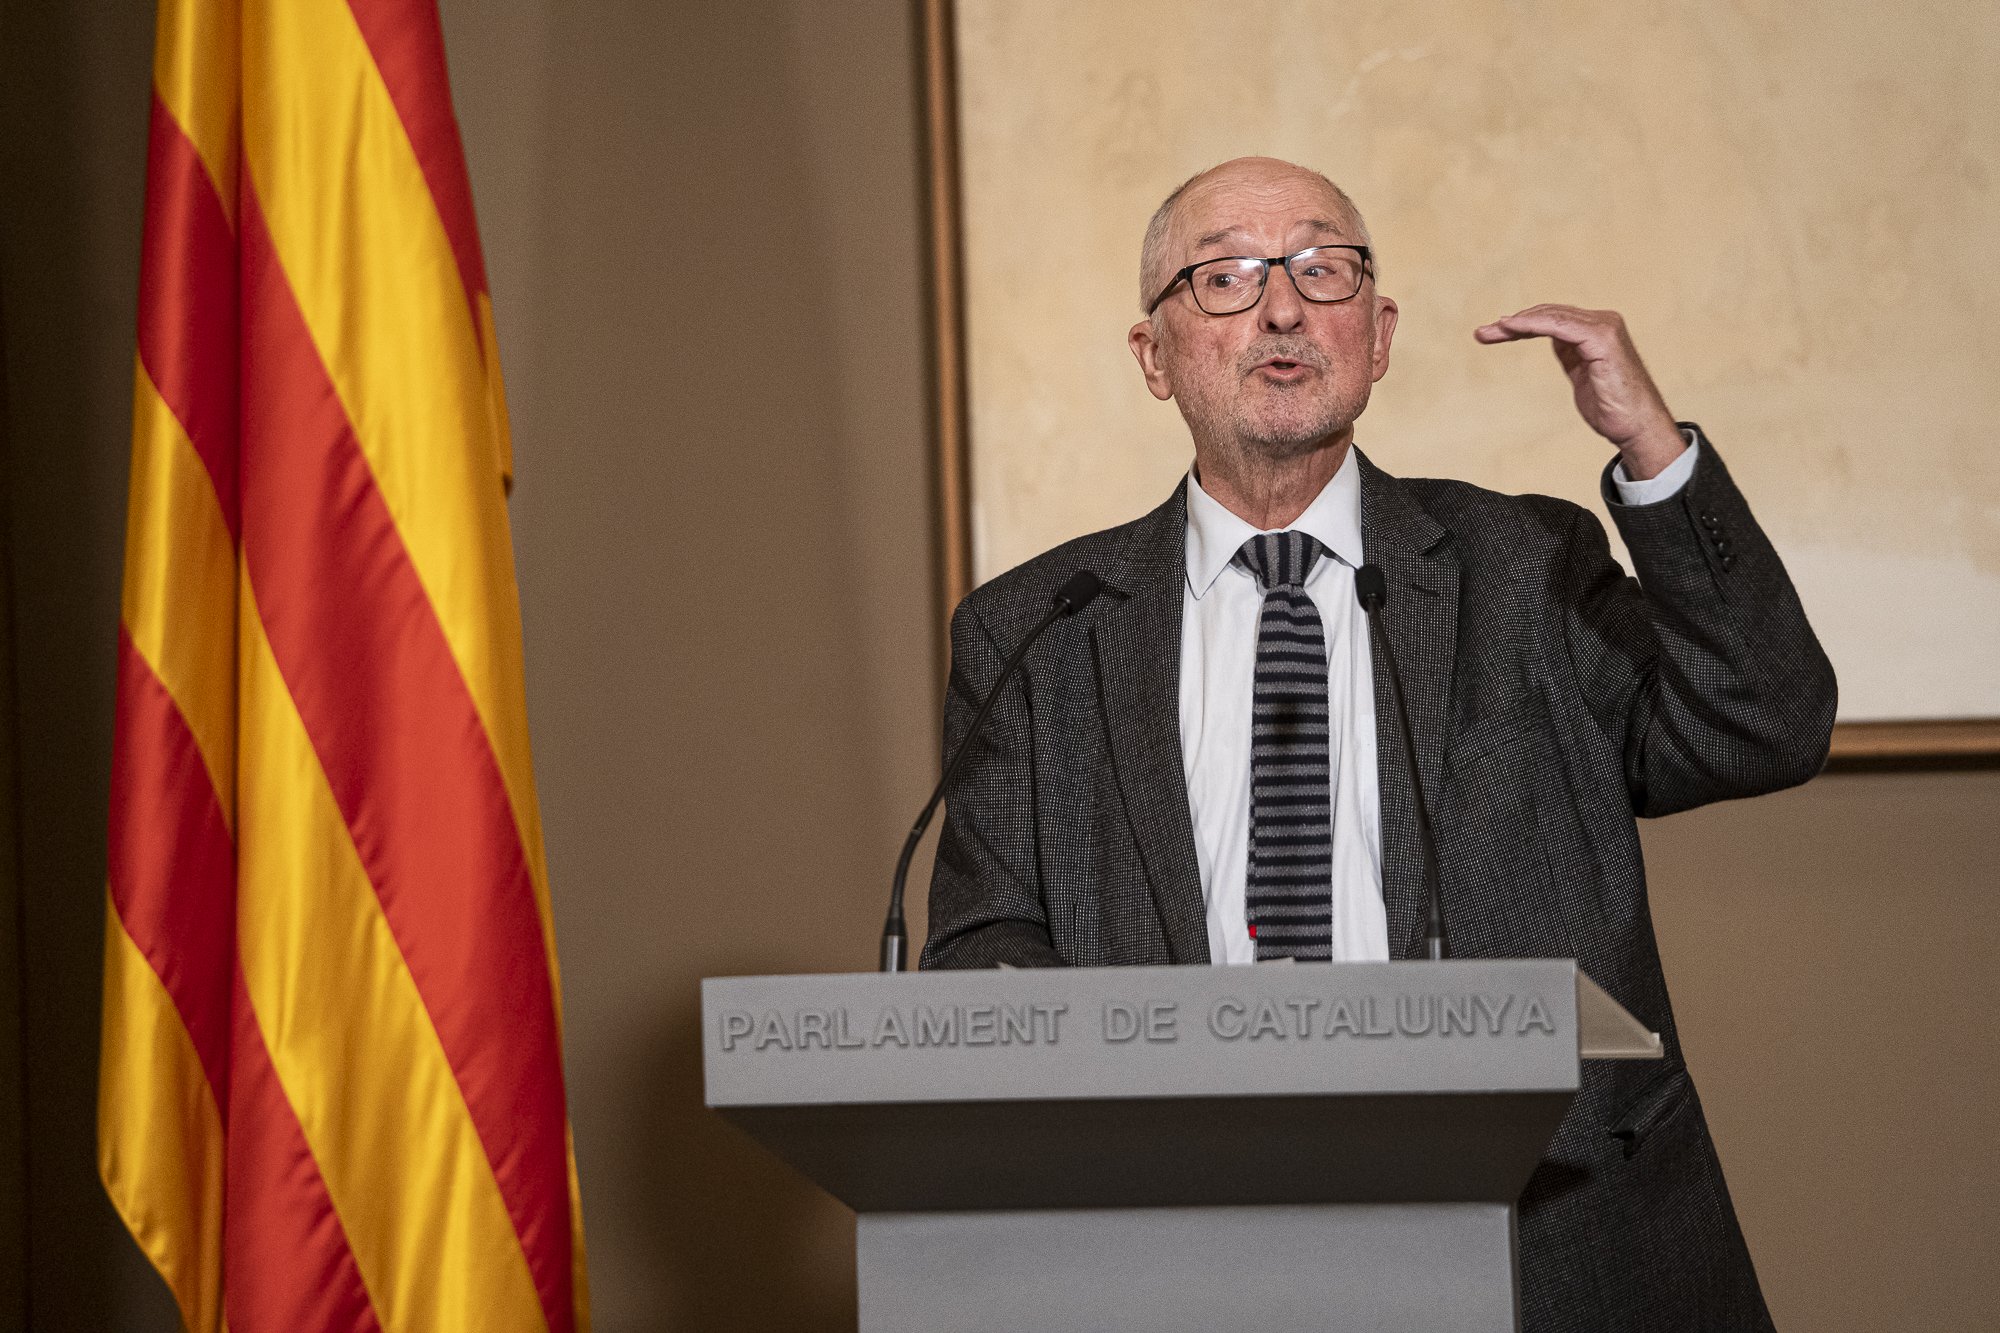 El Síndic pide a los partidos que vuelvan al consenso por el catalán